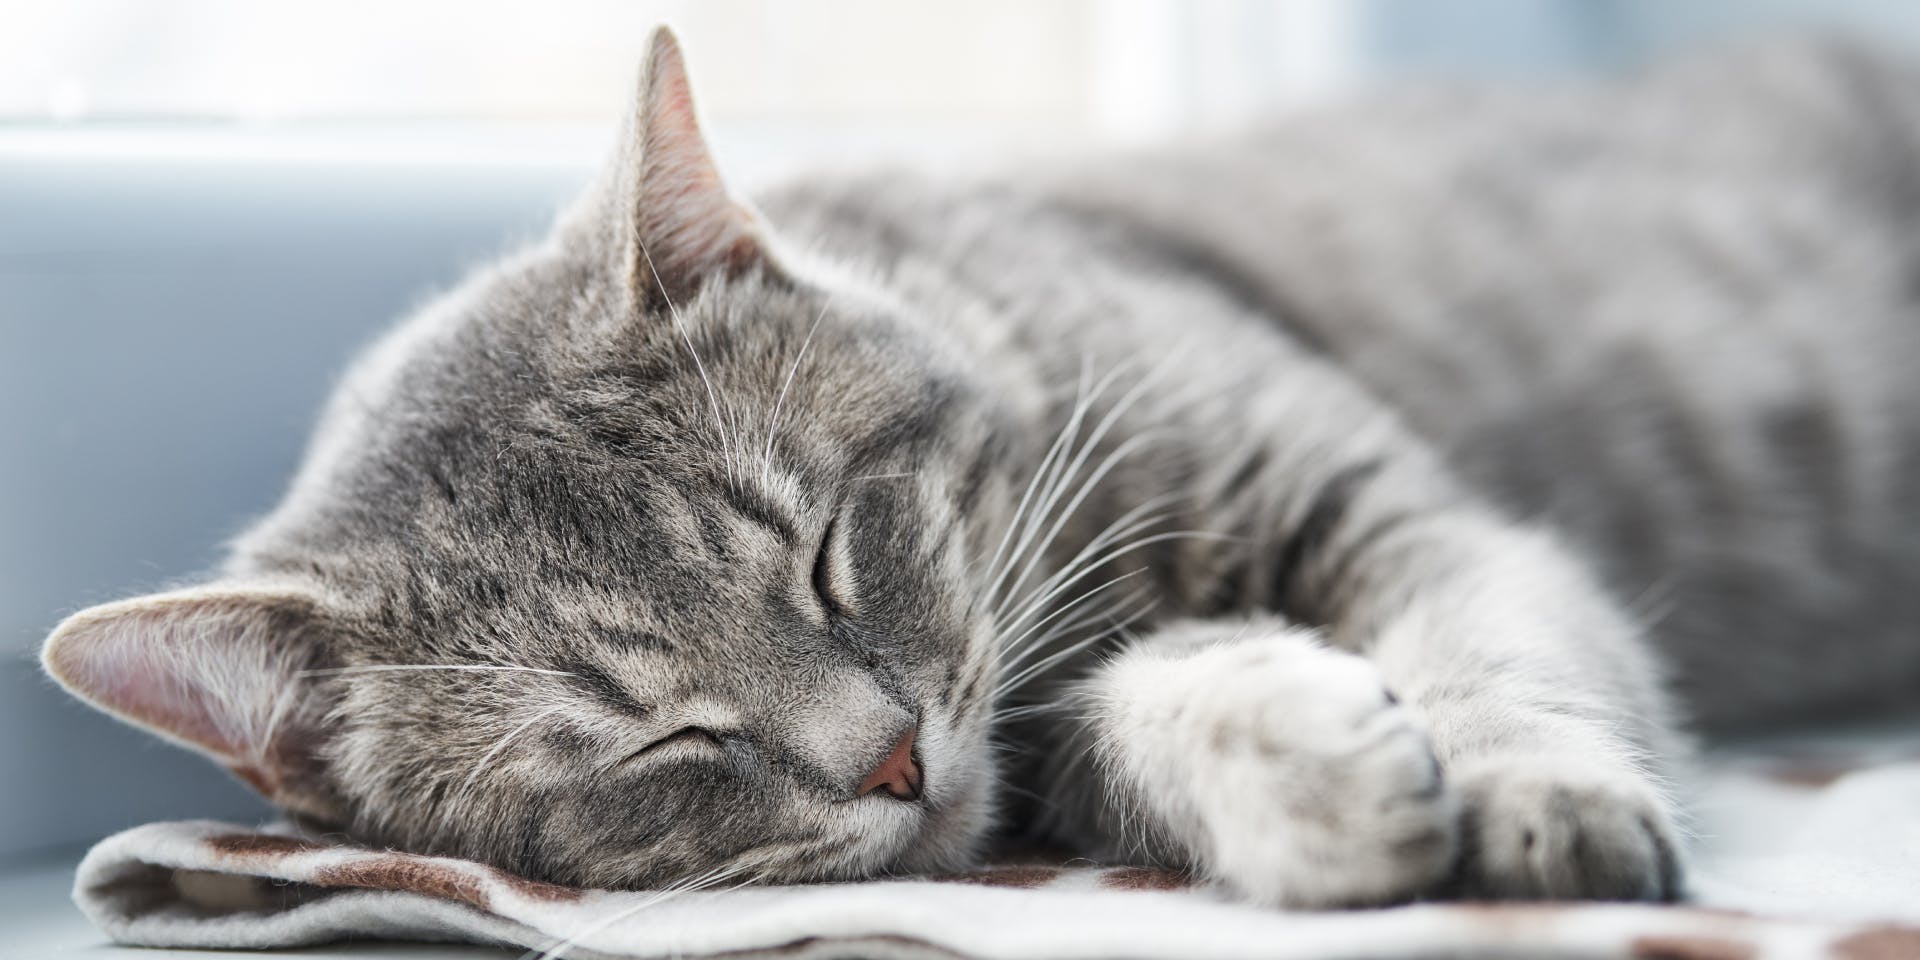 A cute gray cat sleeping.